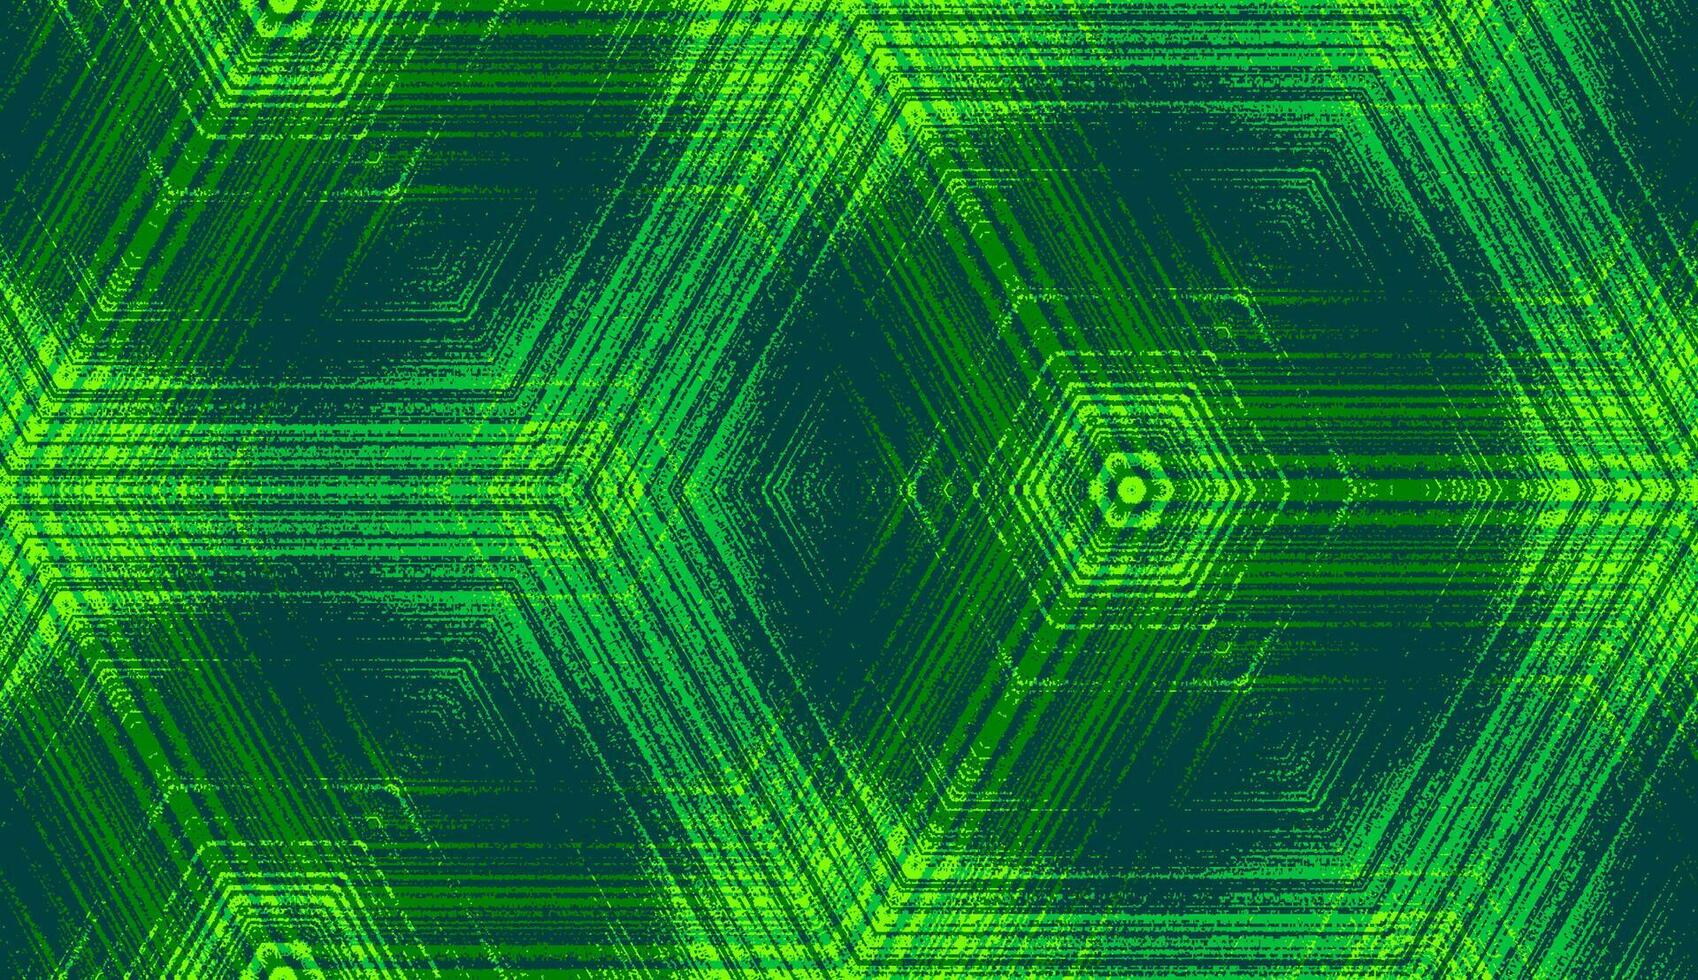 naadloos zeshoek concentrisch getextureerde patroon in chartreuse, smaragd, jade, limoen groen kleuren. symmetrisch abstract meetkundig ornament voor behang achtergrond ontwerp, textiel afdrukken, inpakken. vector